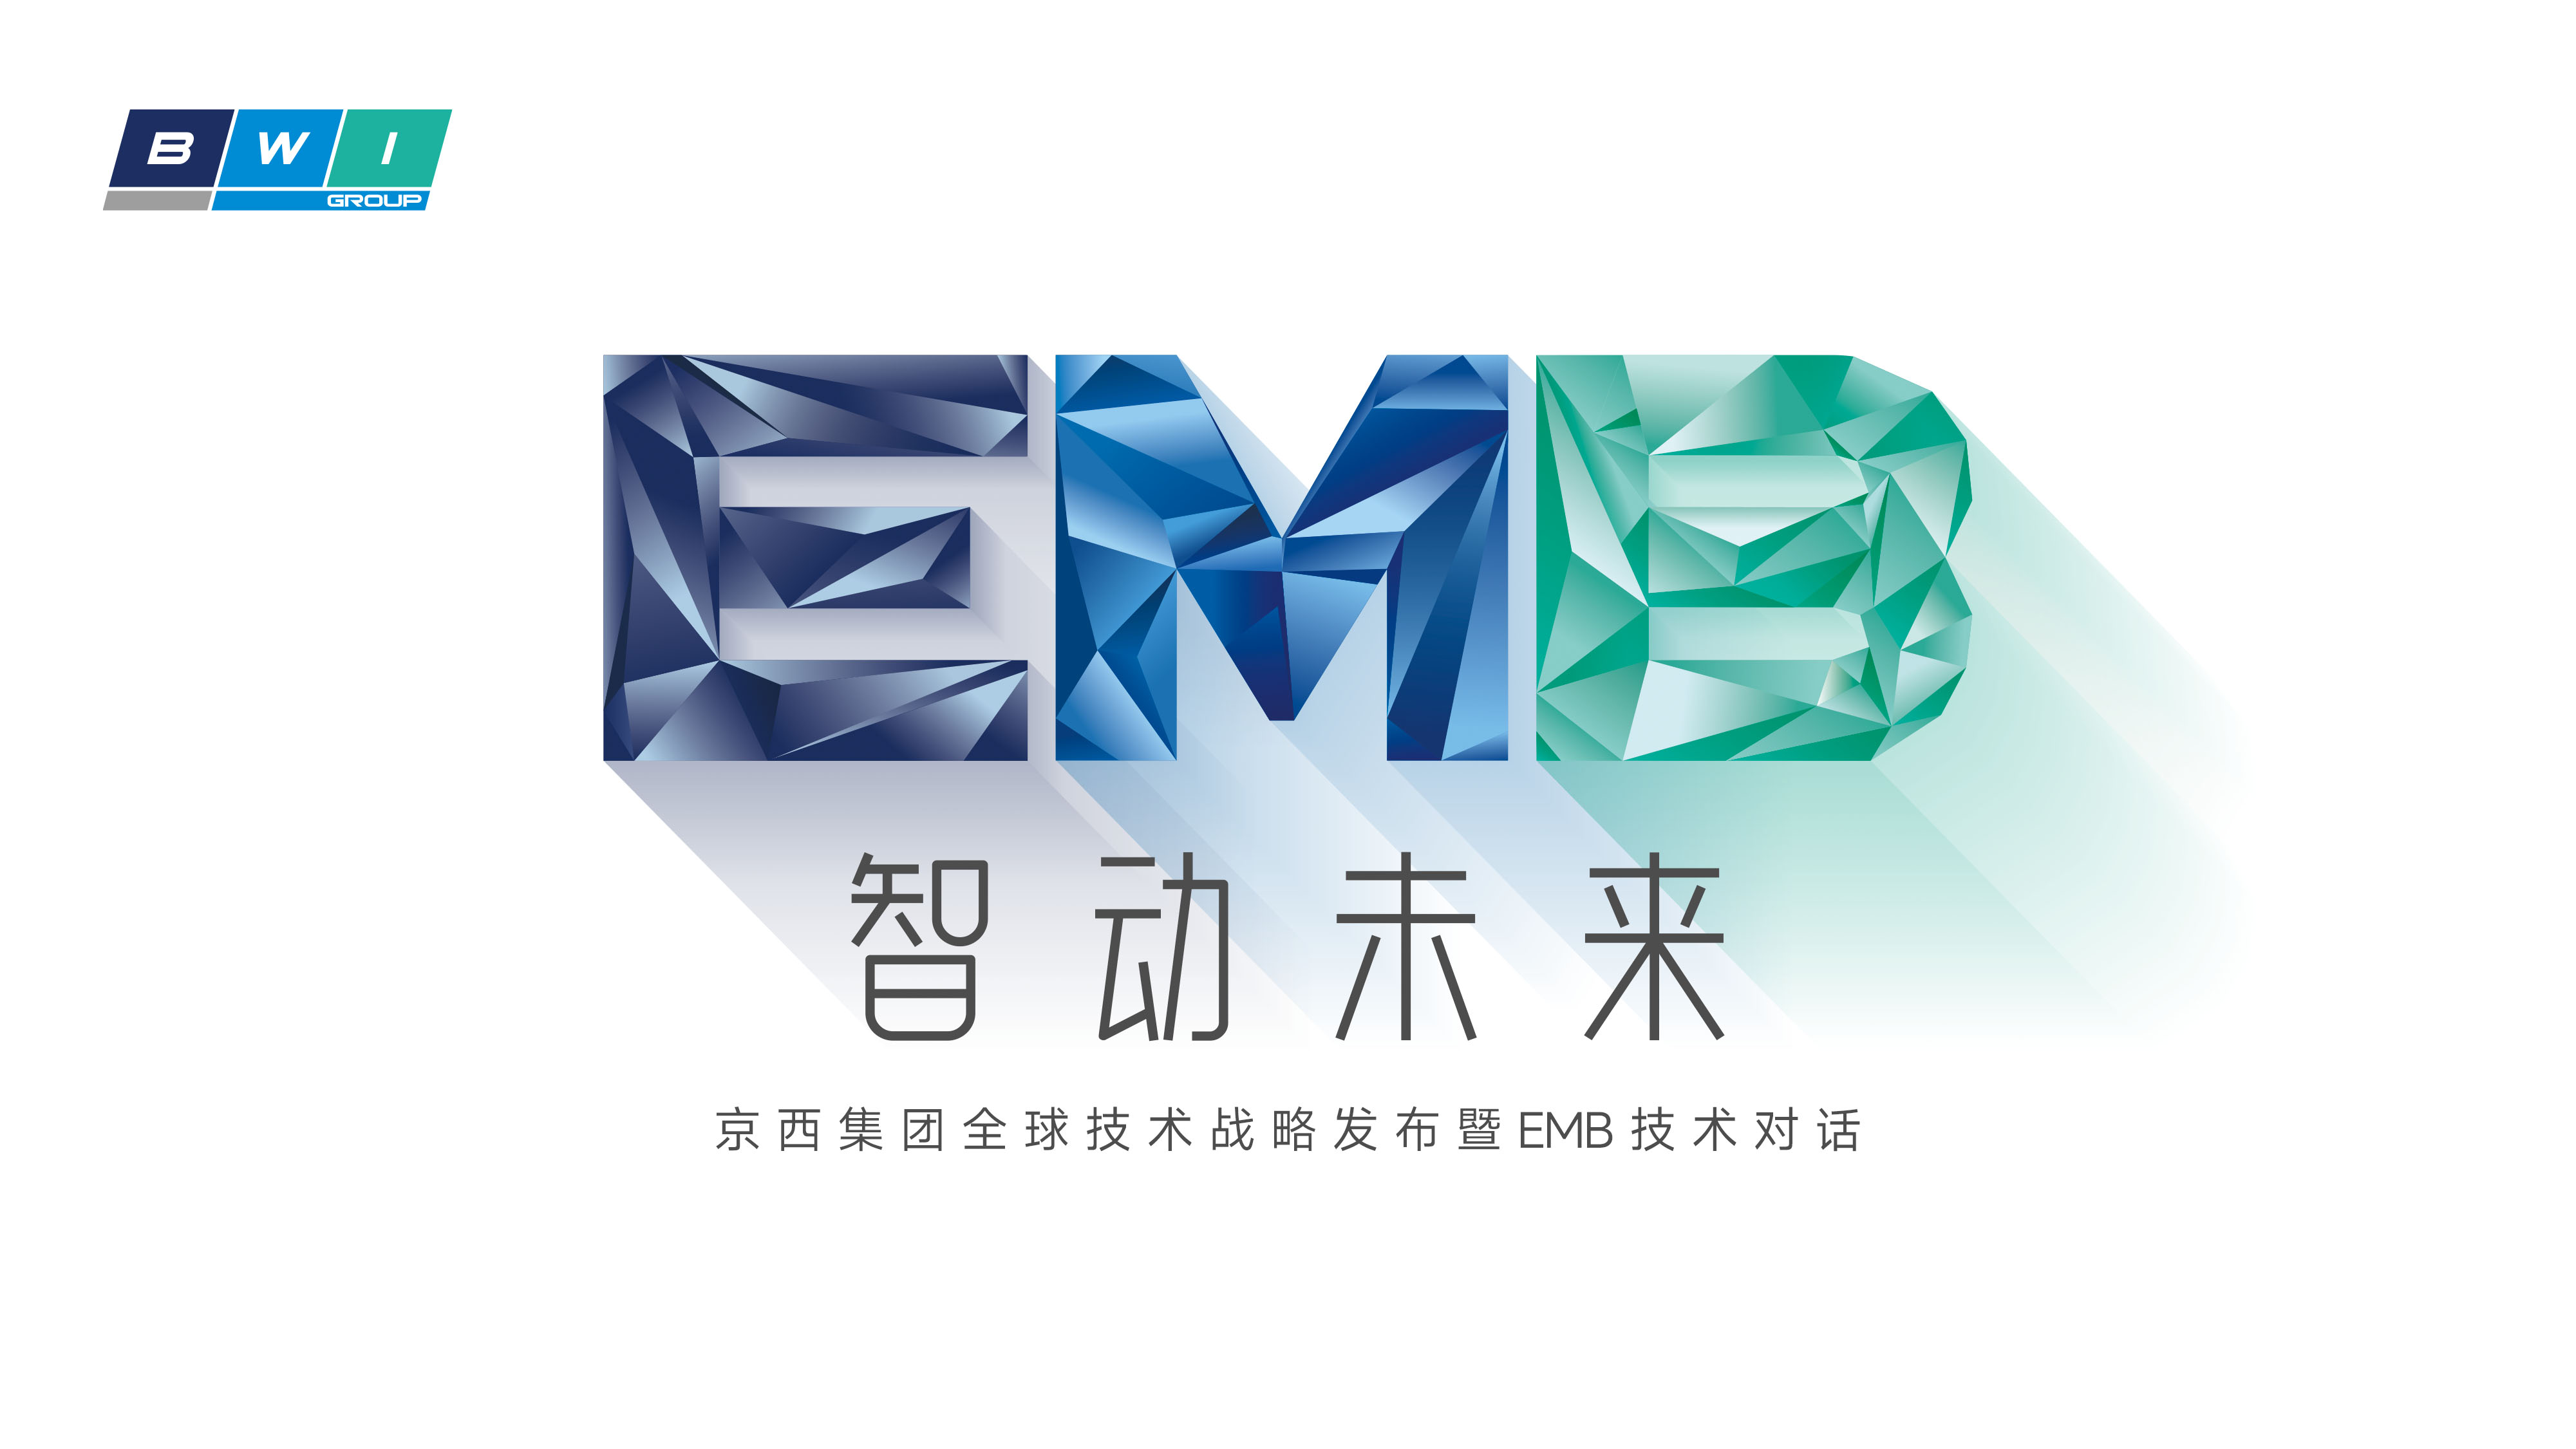 “智动未来”京西集团技术战略发布暨EMB线上发布会